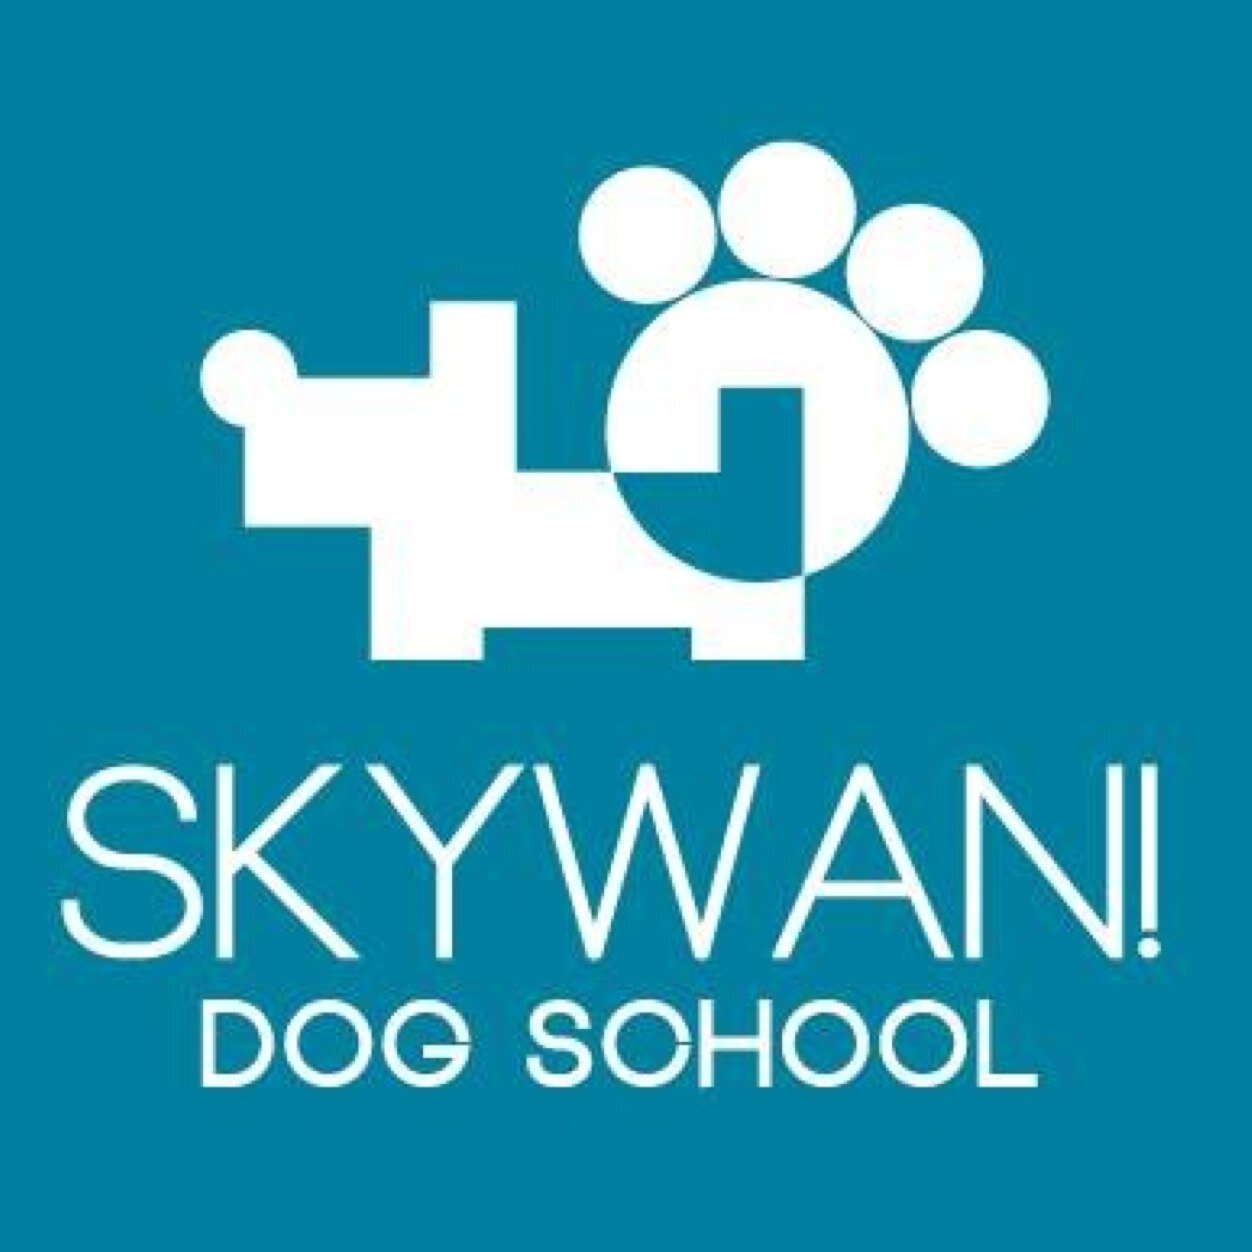 SkyWan! Dog School公式アカウント ほめて楽しく、犬自信が考えるトレーニング方法を飼い主様にお伝えしています。興味のある方はいつでもご連絡ください！